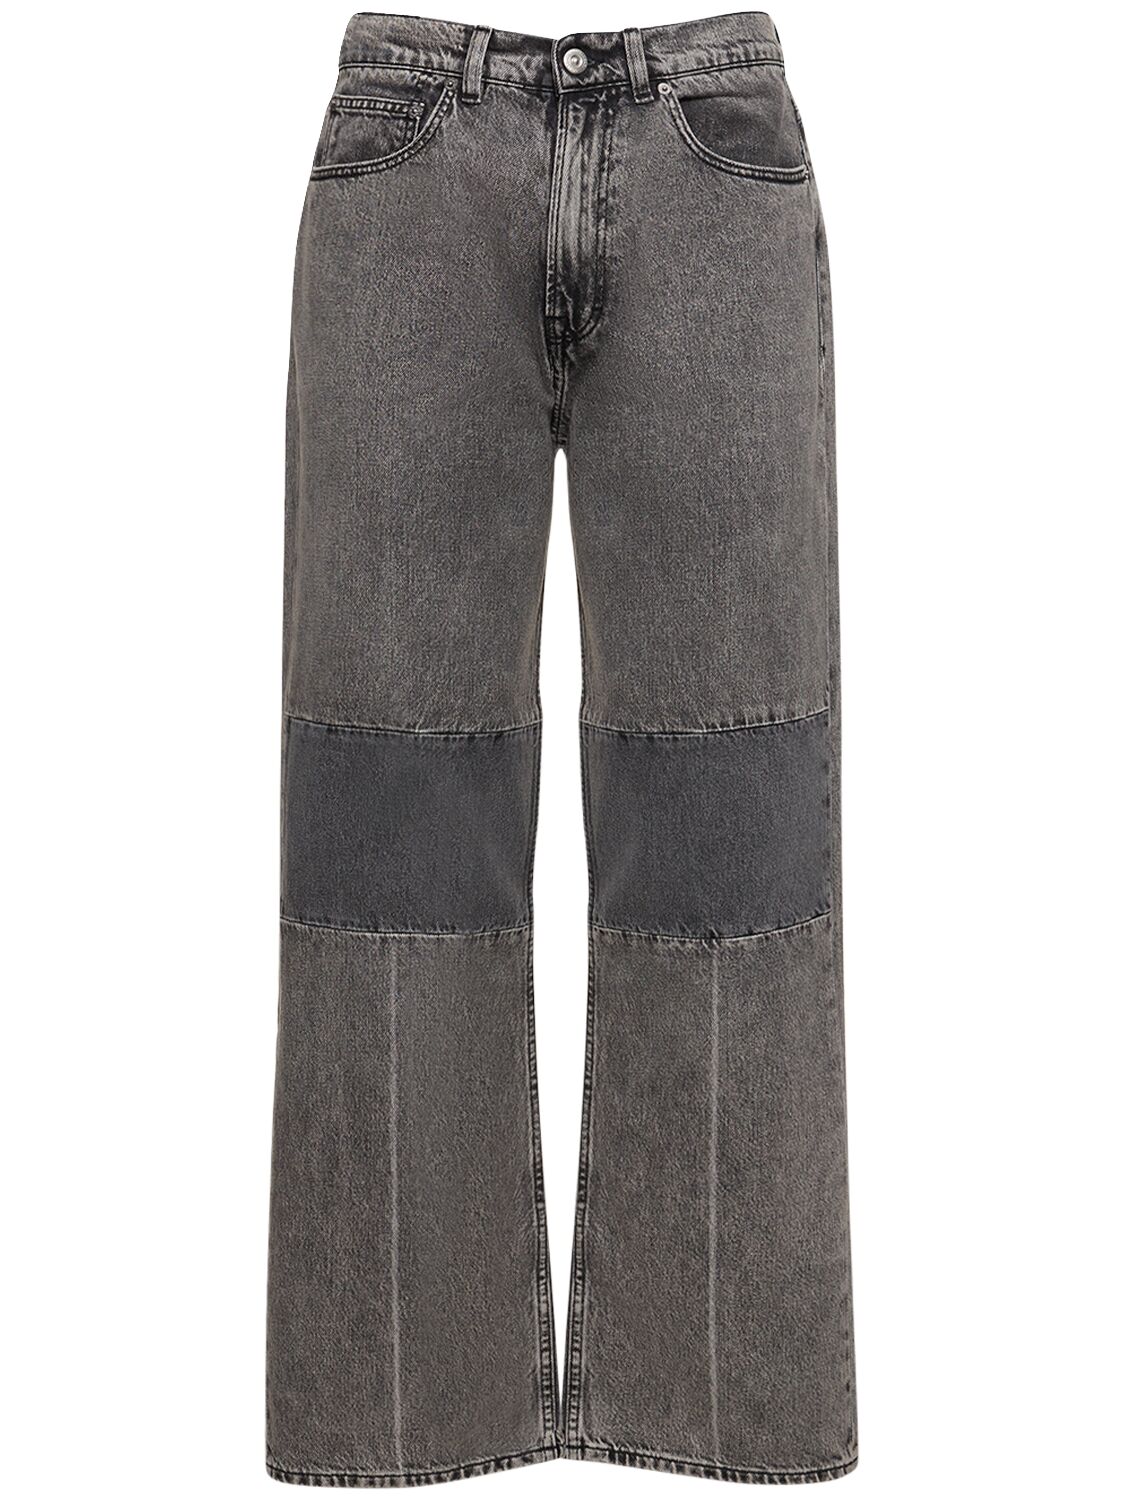 25.5cm Extended Third Cut Cotton Jeans – MEN > CLOTHING > JEANS